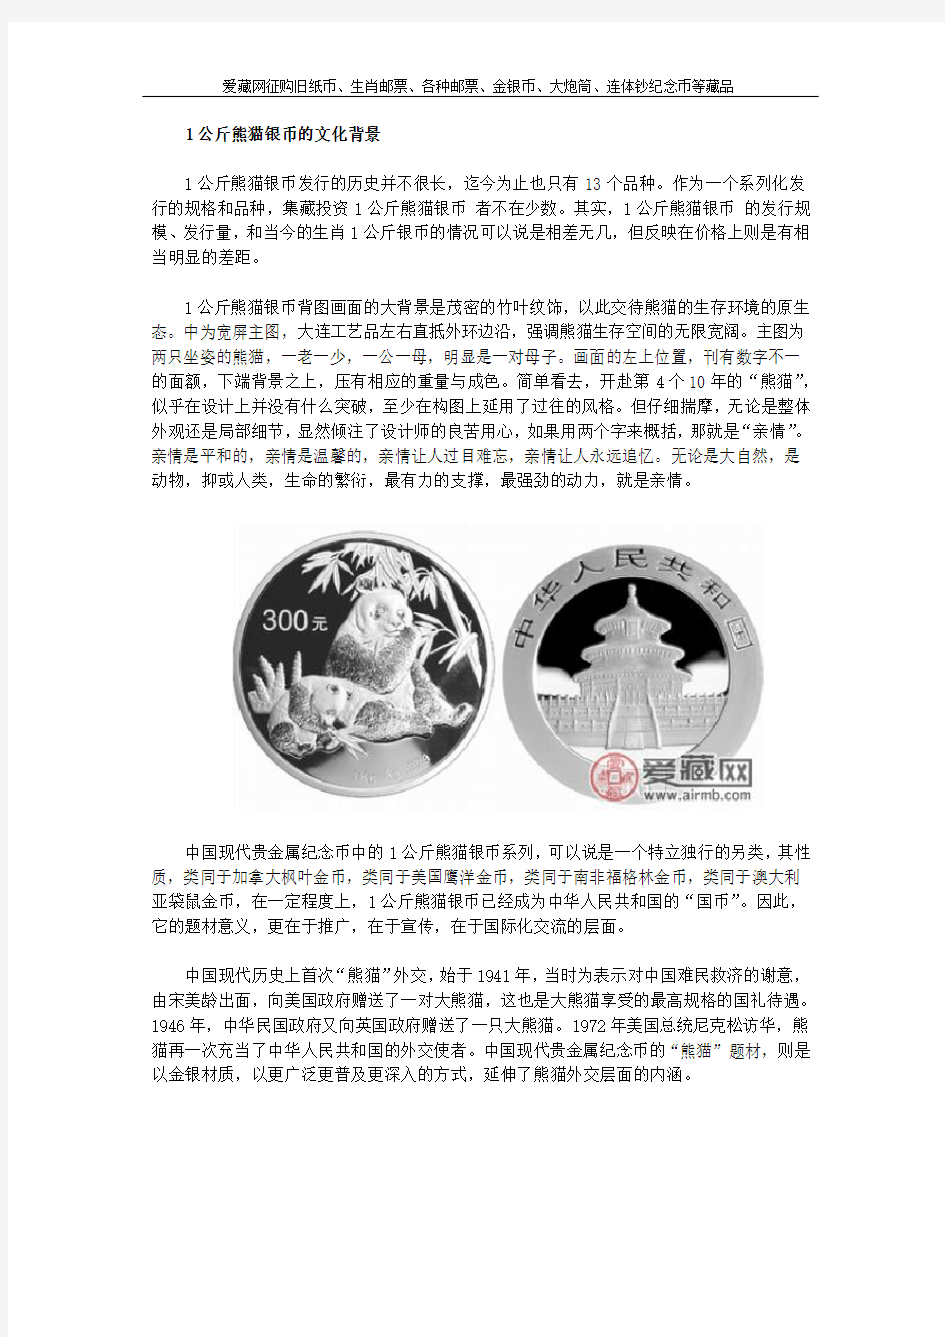 1公斤熊猫银币的文化背景